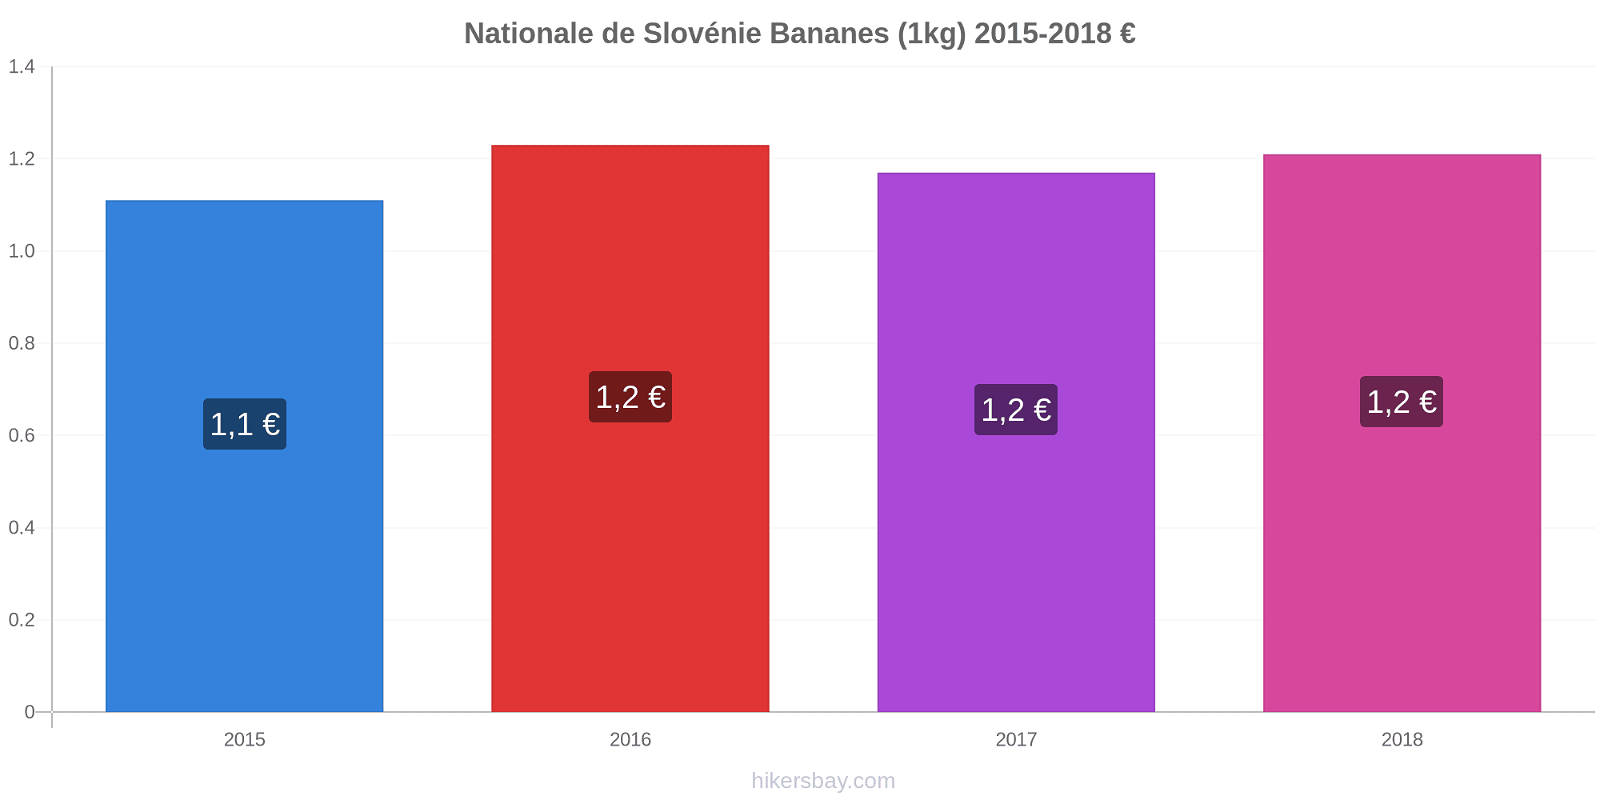 Nationale de Slovénie changements de prix Bananes (1kg) hikersbay.com